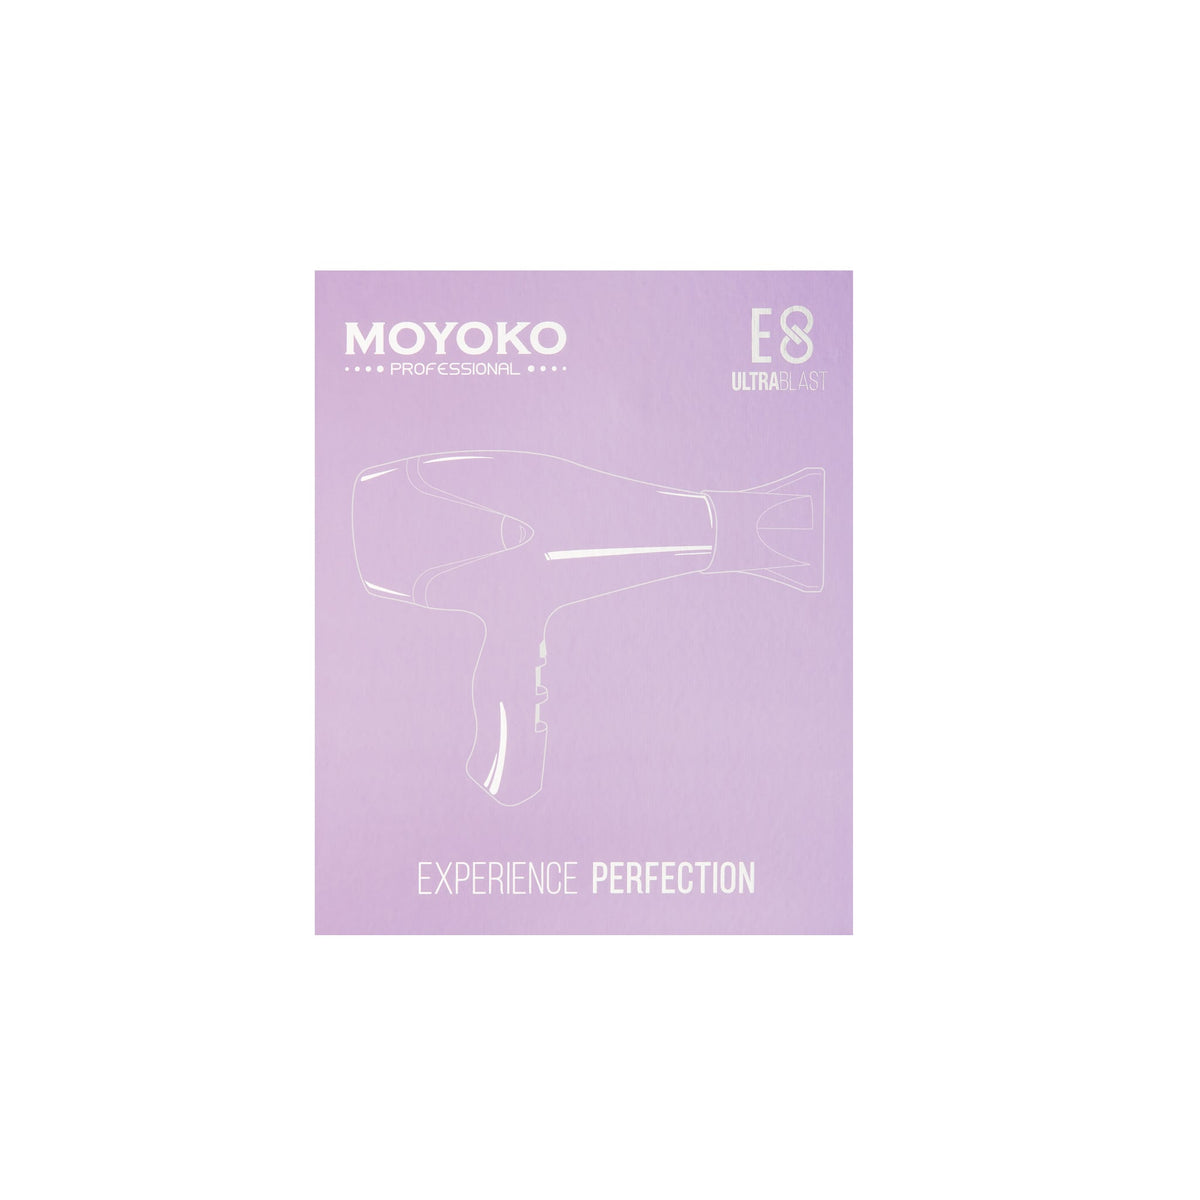 Mycro Keratin Moyoko E8 Hairdryer - Lilac